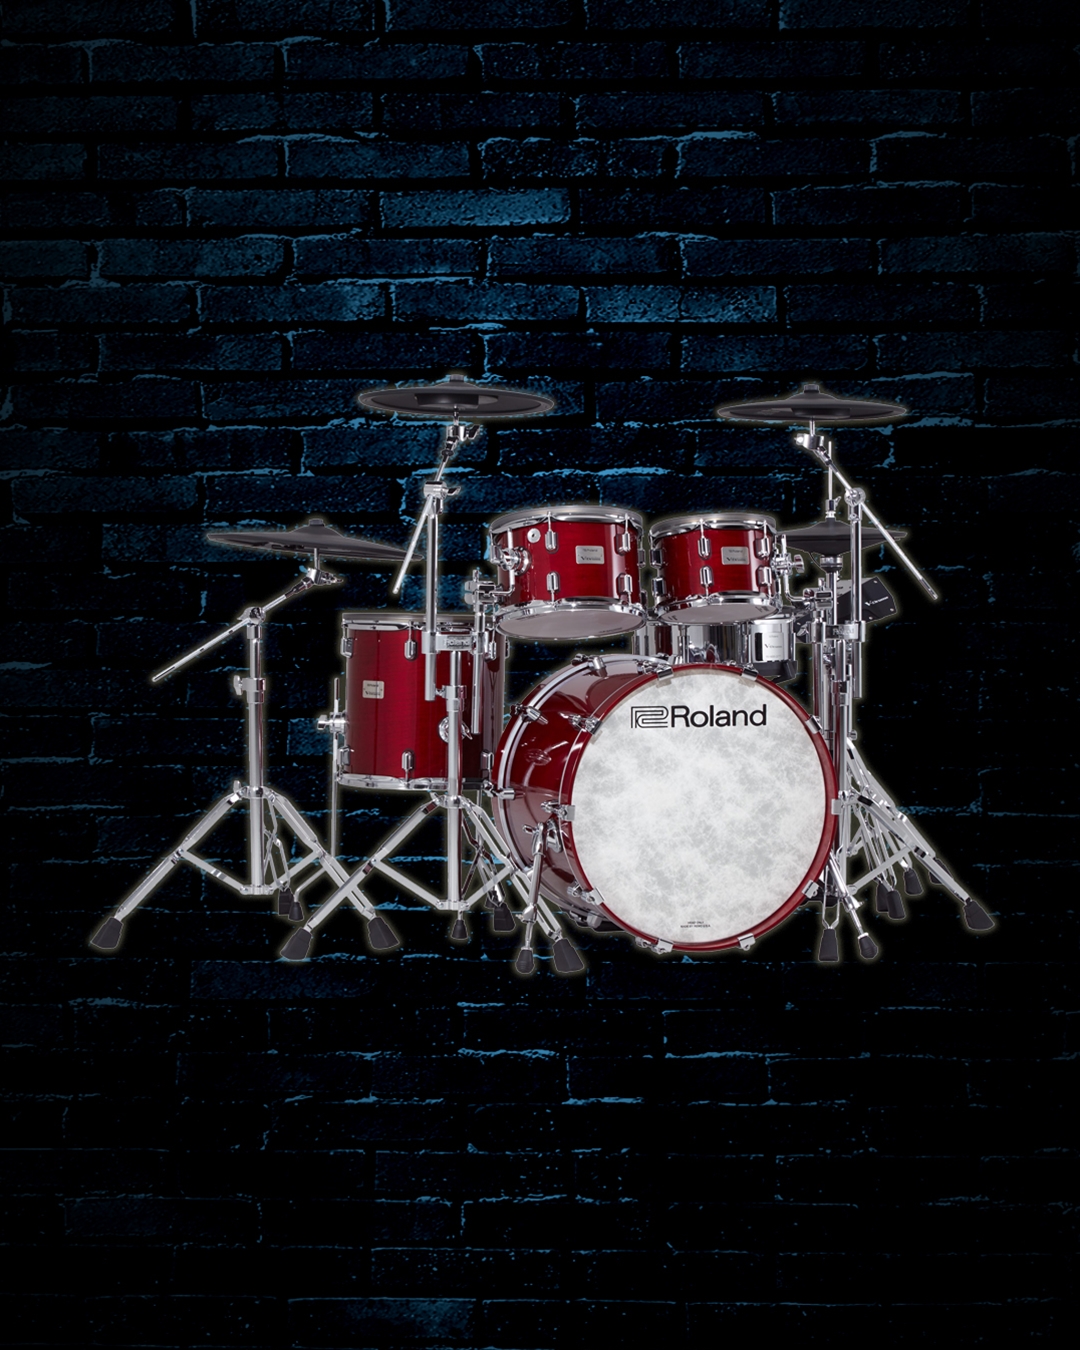 drum set design